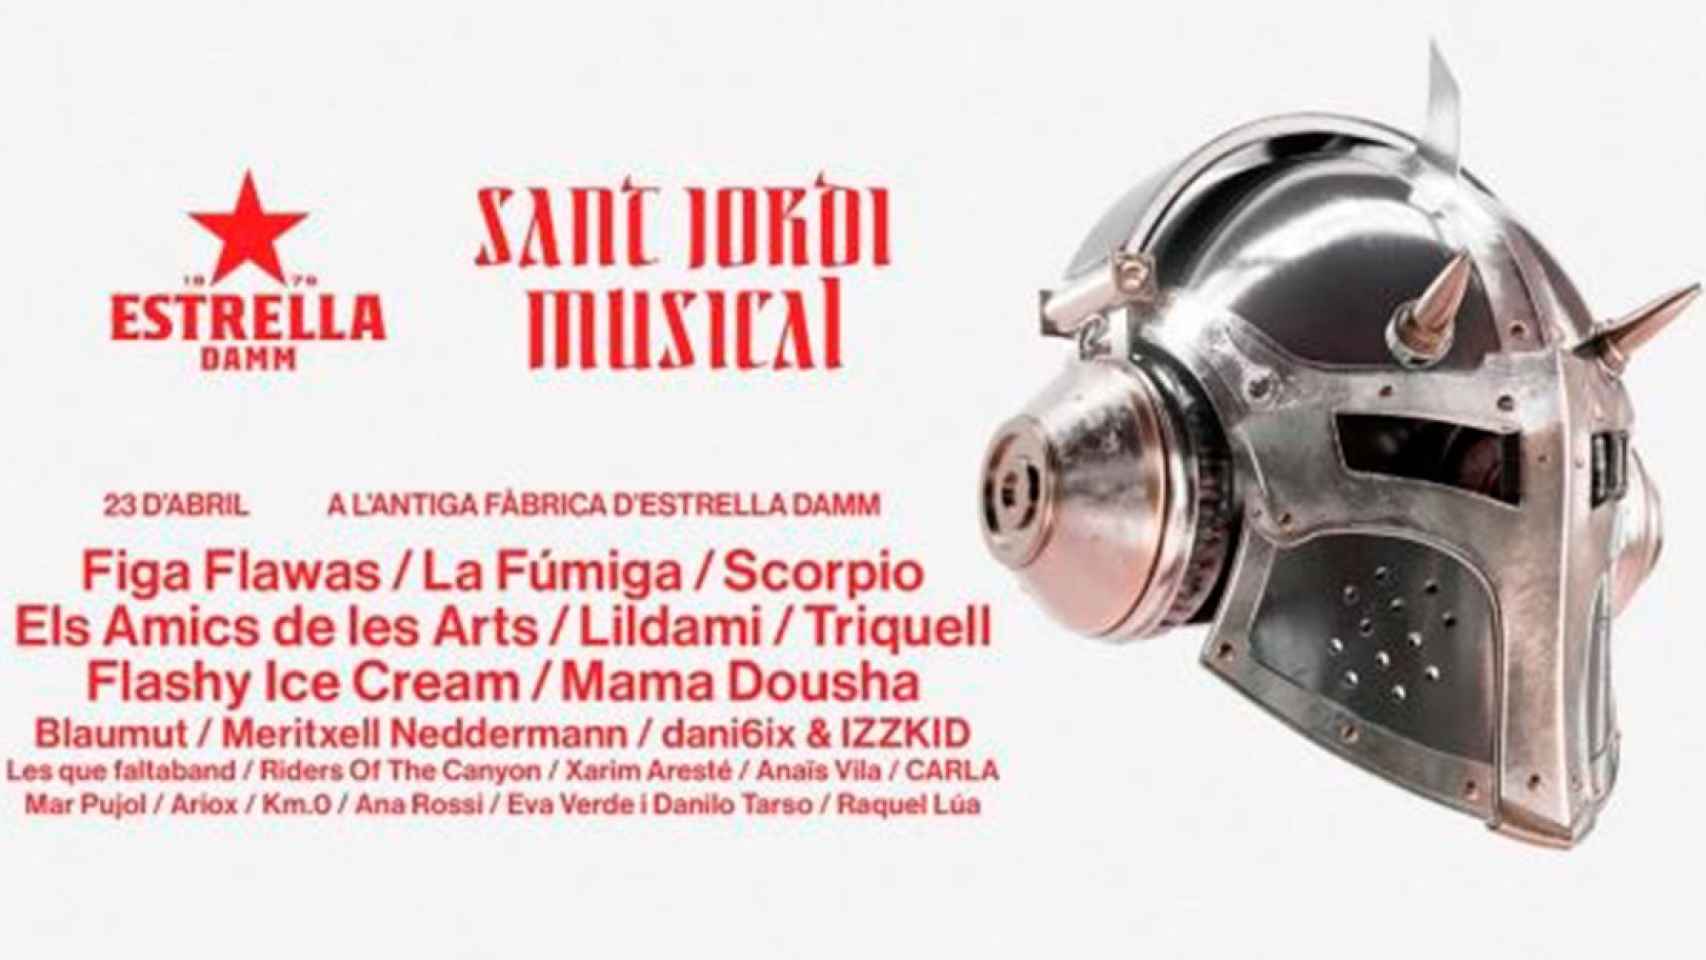 Cartel de la nueva edición del Sant Jordi Musical de Estrella Damm